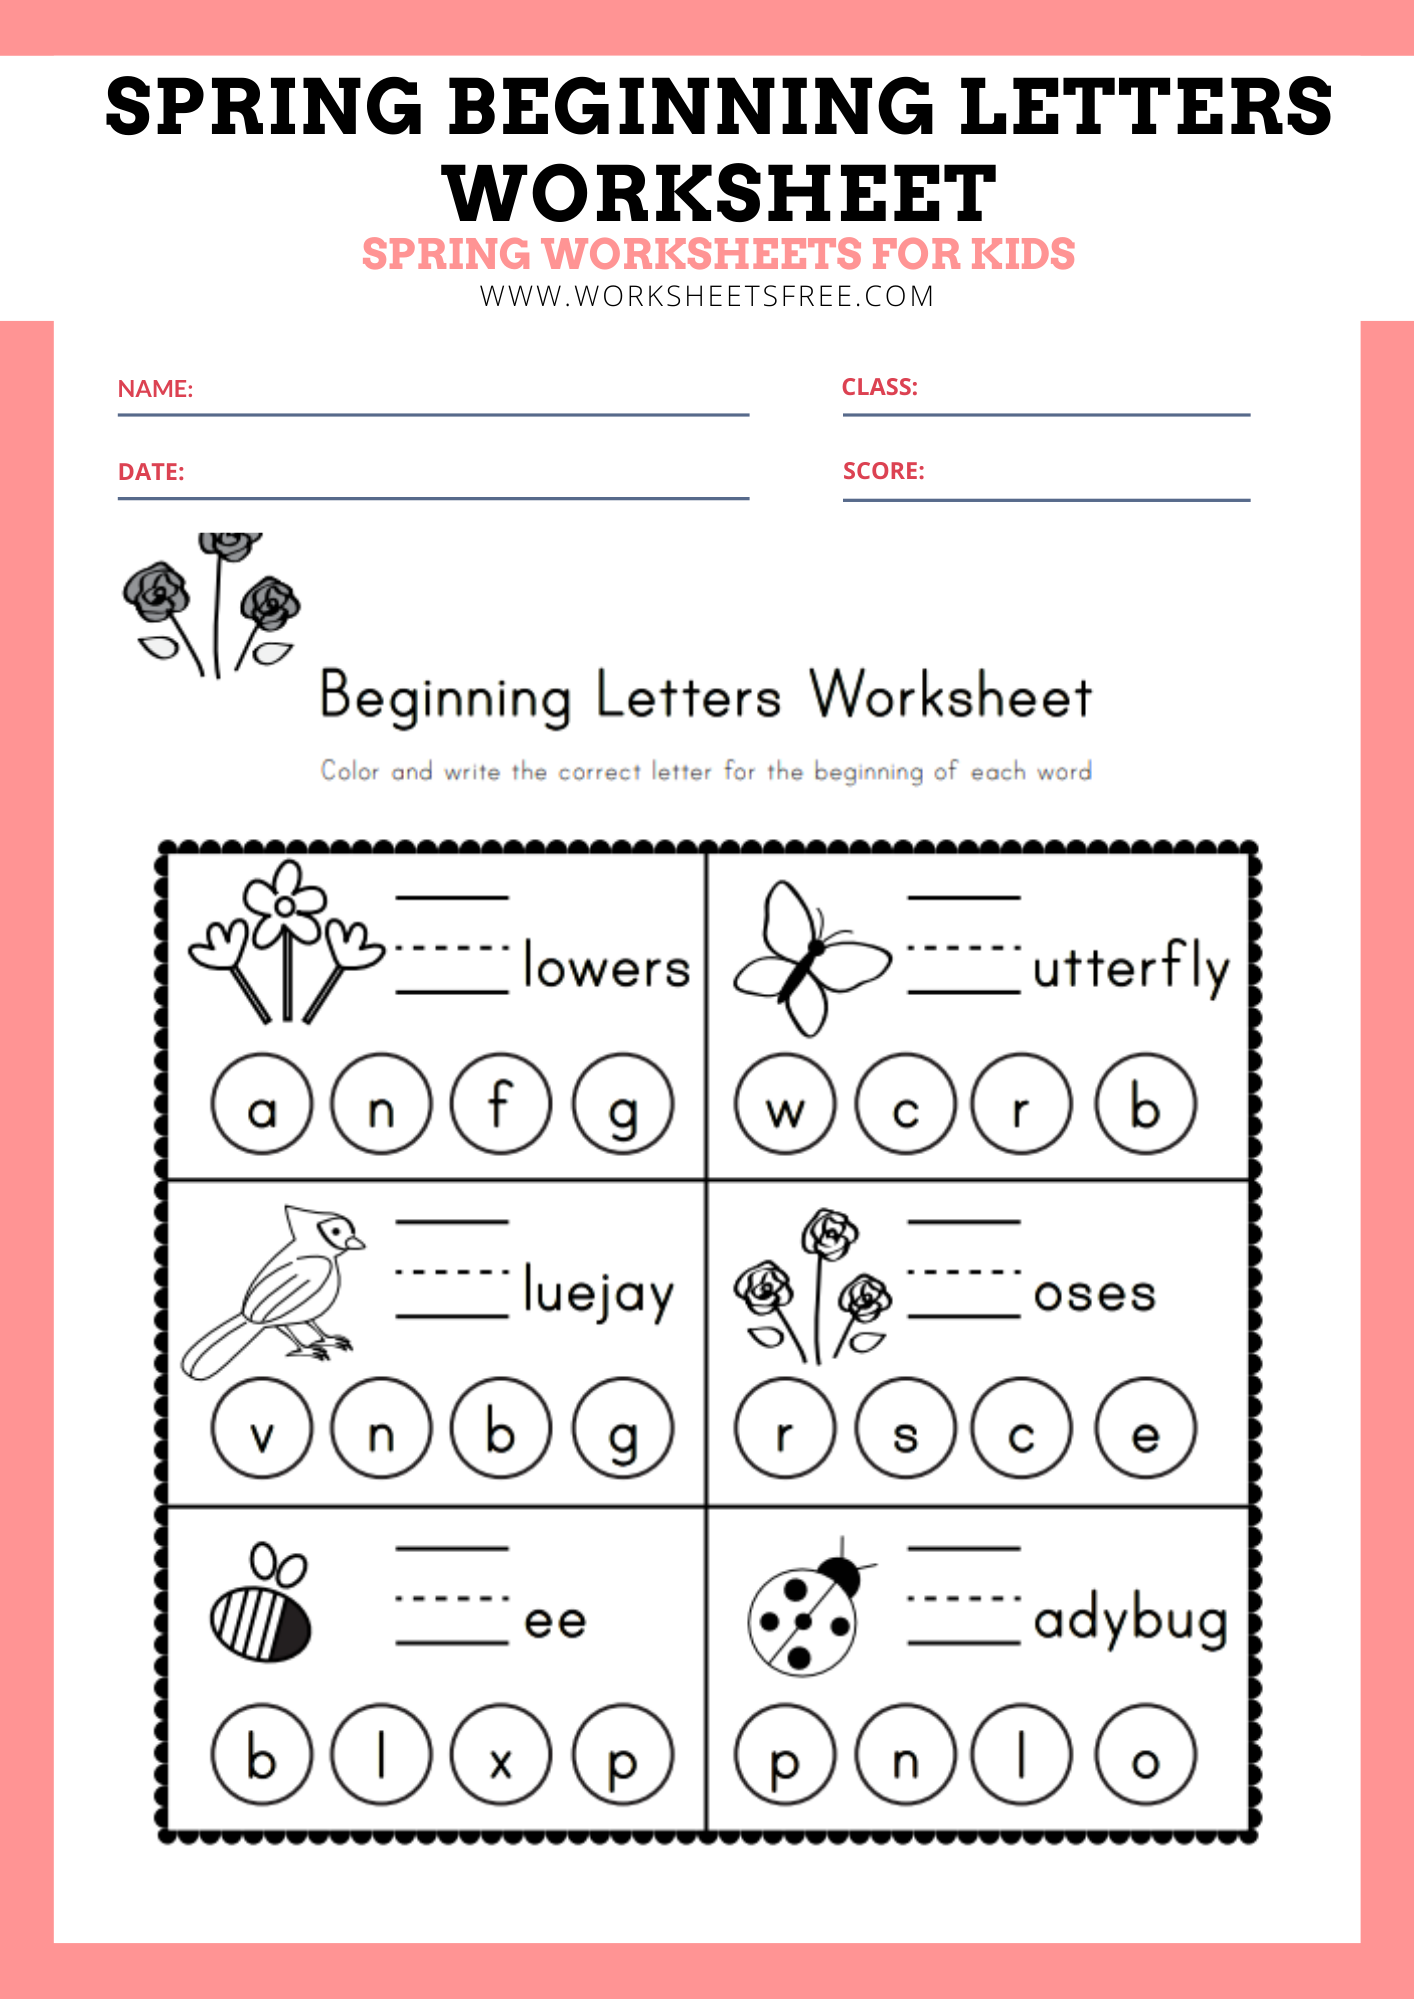 spring-beginning-letters-worksheet-worksheets-free